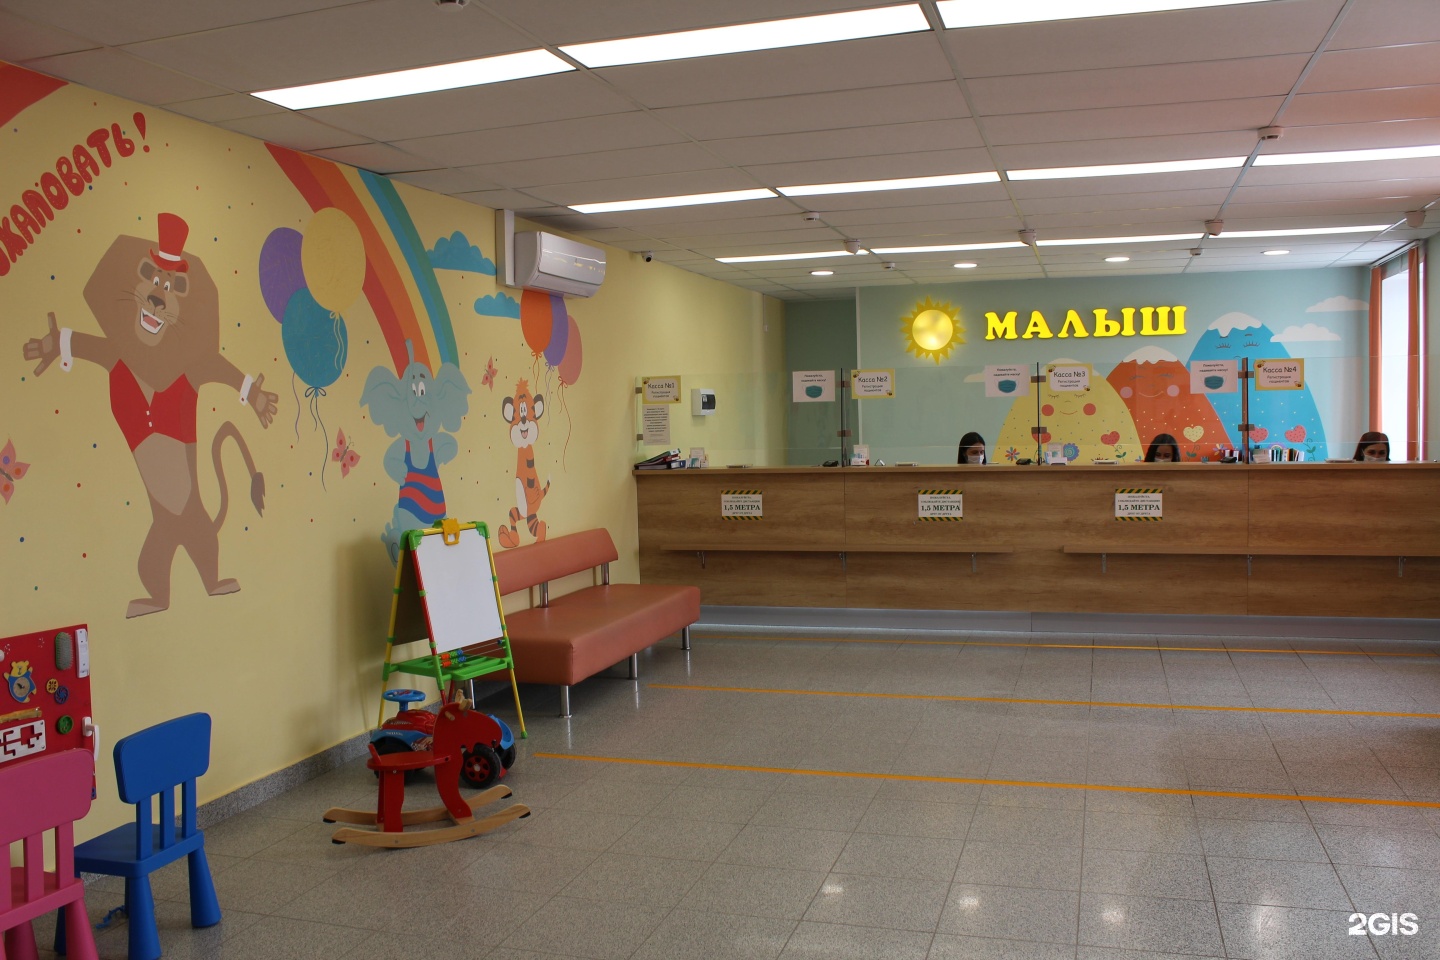 Центр малыш на Балтийской в Барнауле. Малыш Барнаул Балтийская 40а. Эвелиум детский центр Барнаул. Малышок Барнаул Балтийская 40а.